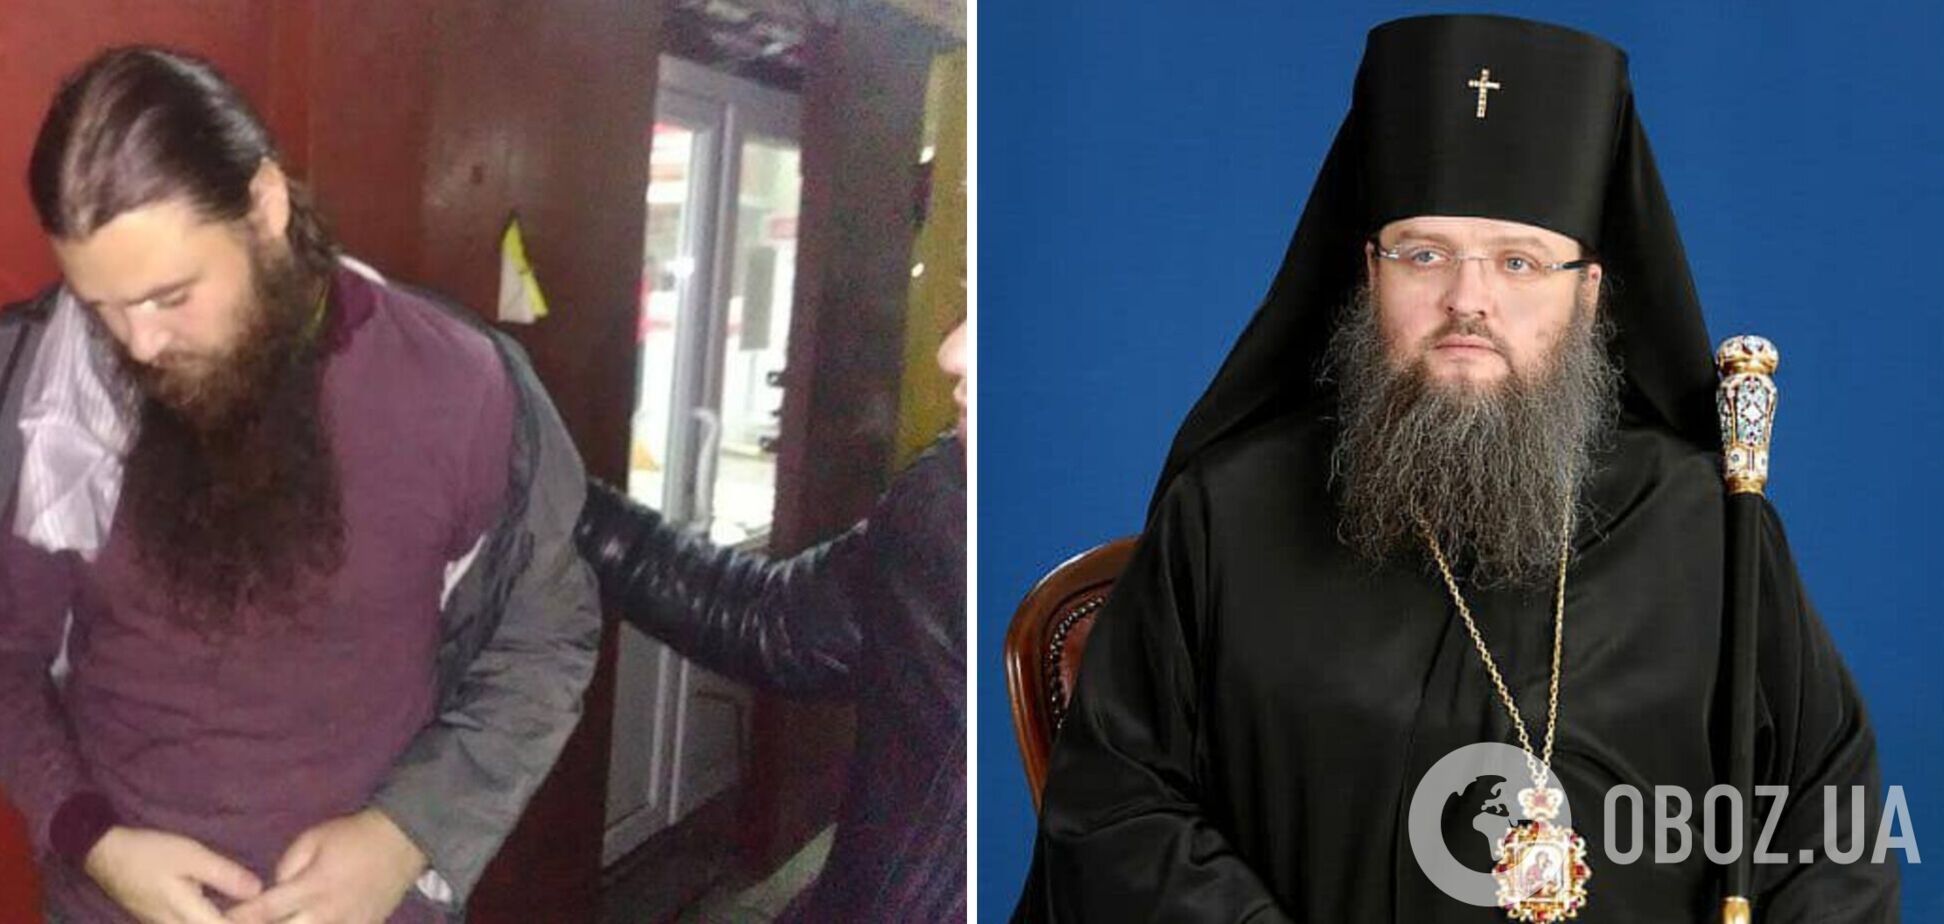 Помощника митрополита Луки, объявившего голодовку в поддержку выселенцев из Киево-Печерской лавры, задерживали с наркотиками. Фото